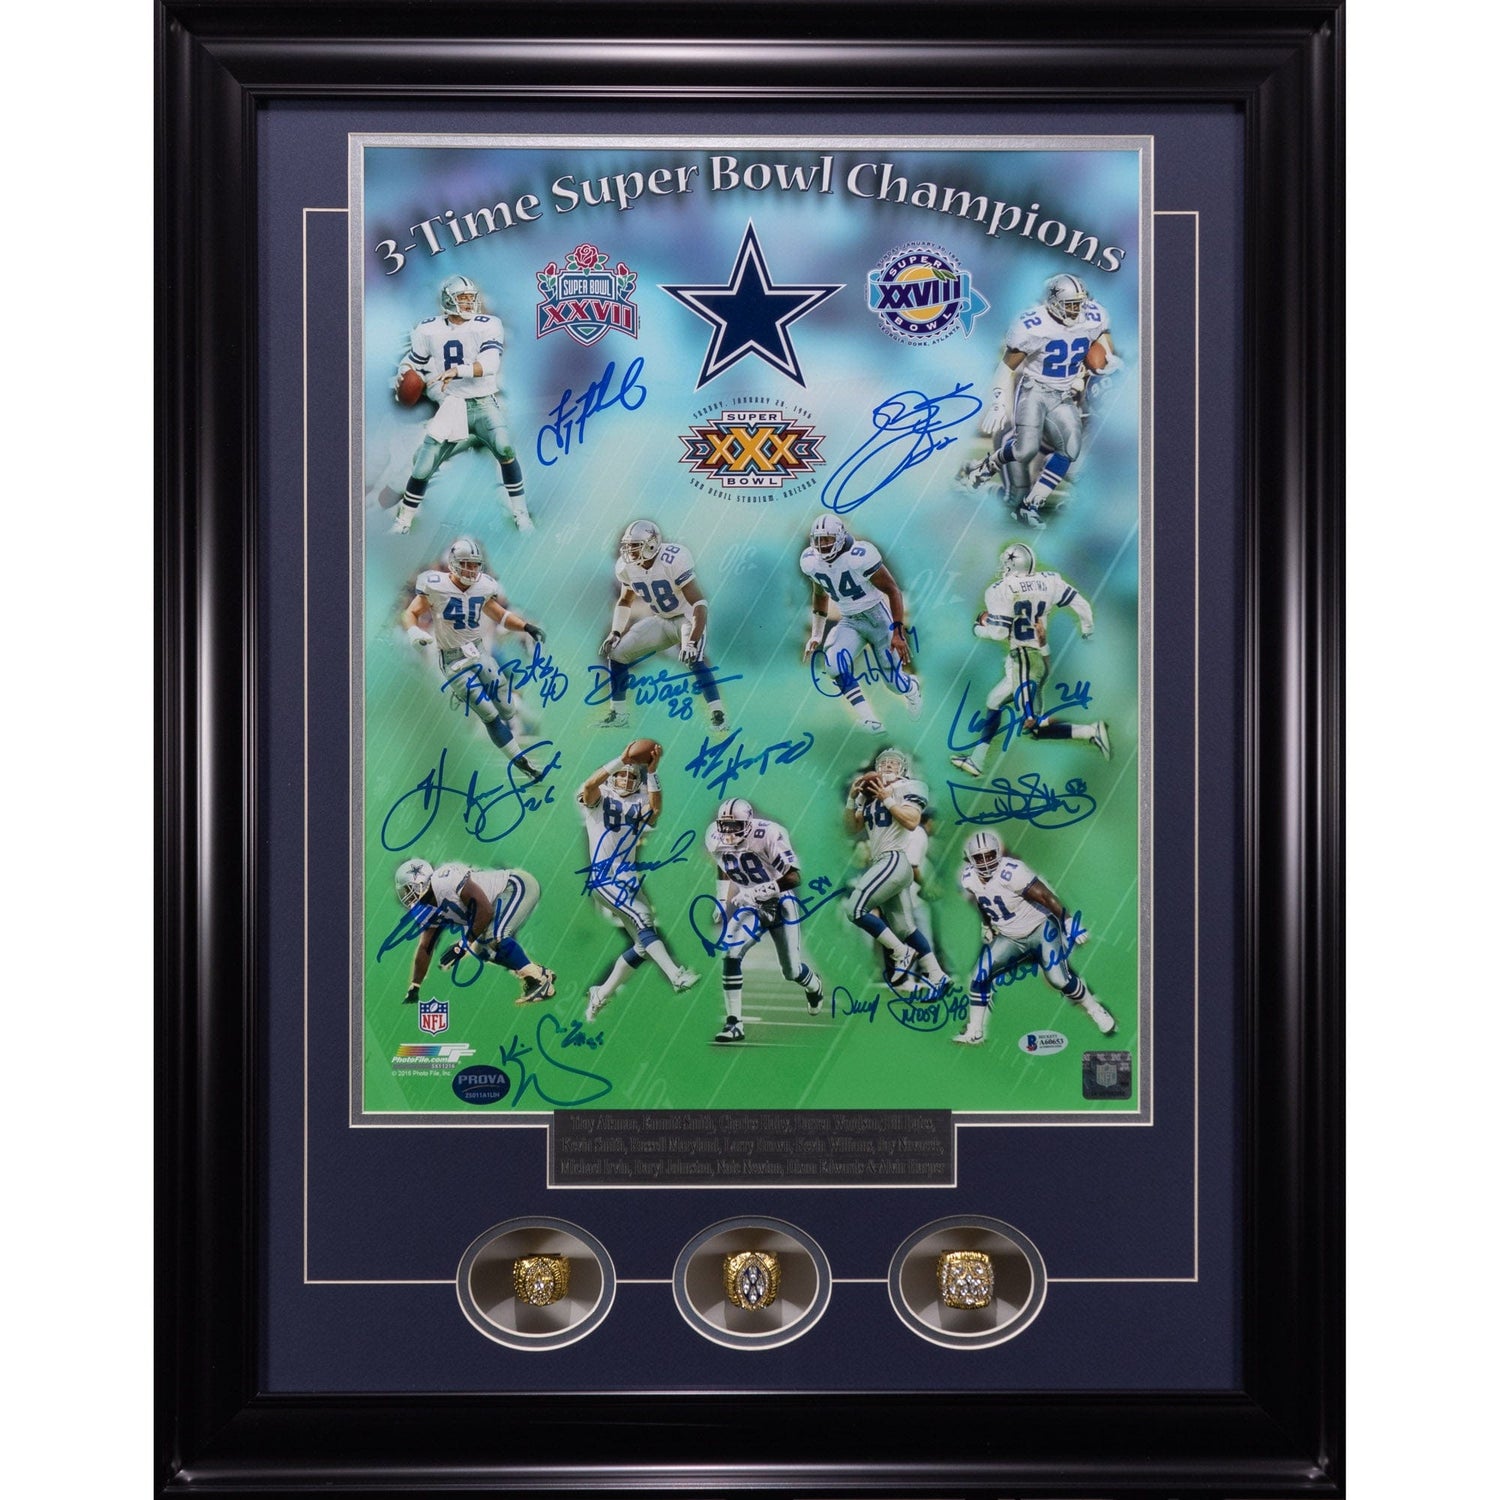 3 Time Dallas Cowboy Super Bowl Champs Multi-Signed Photograph Memorabilia ZOOM